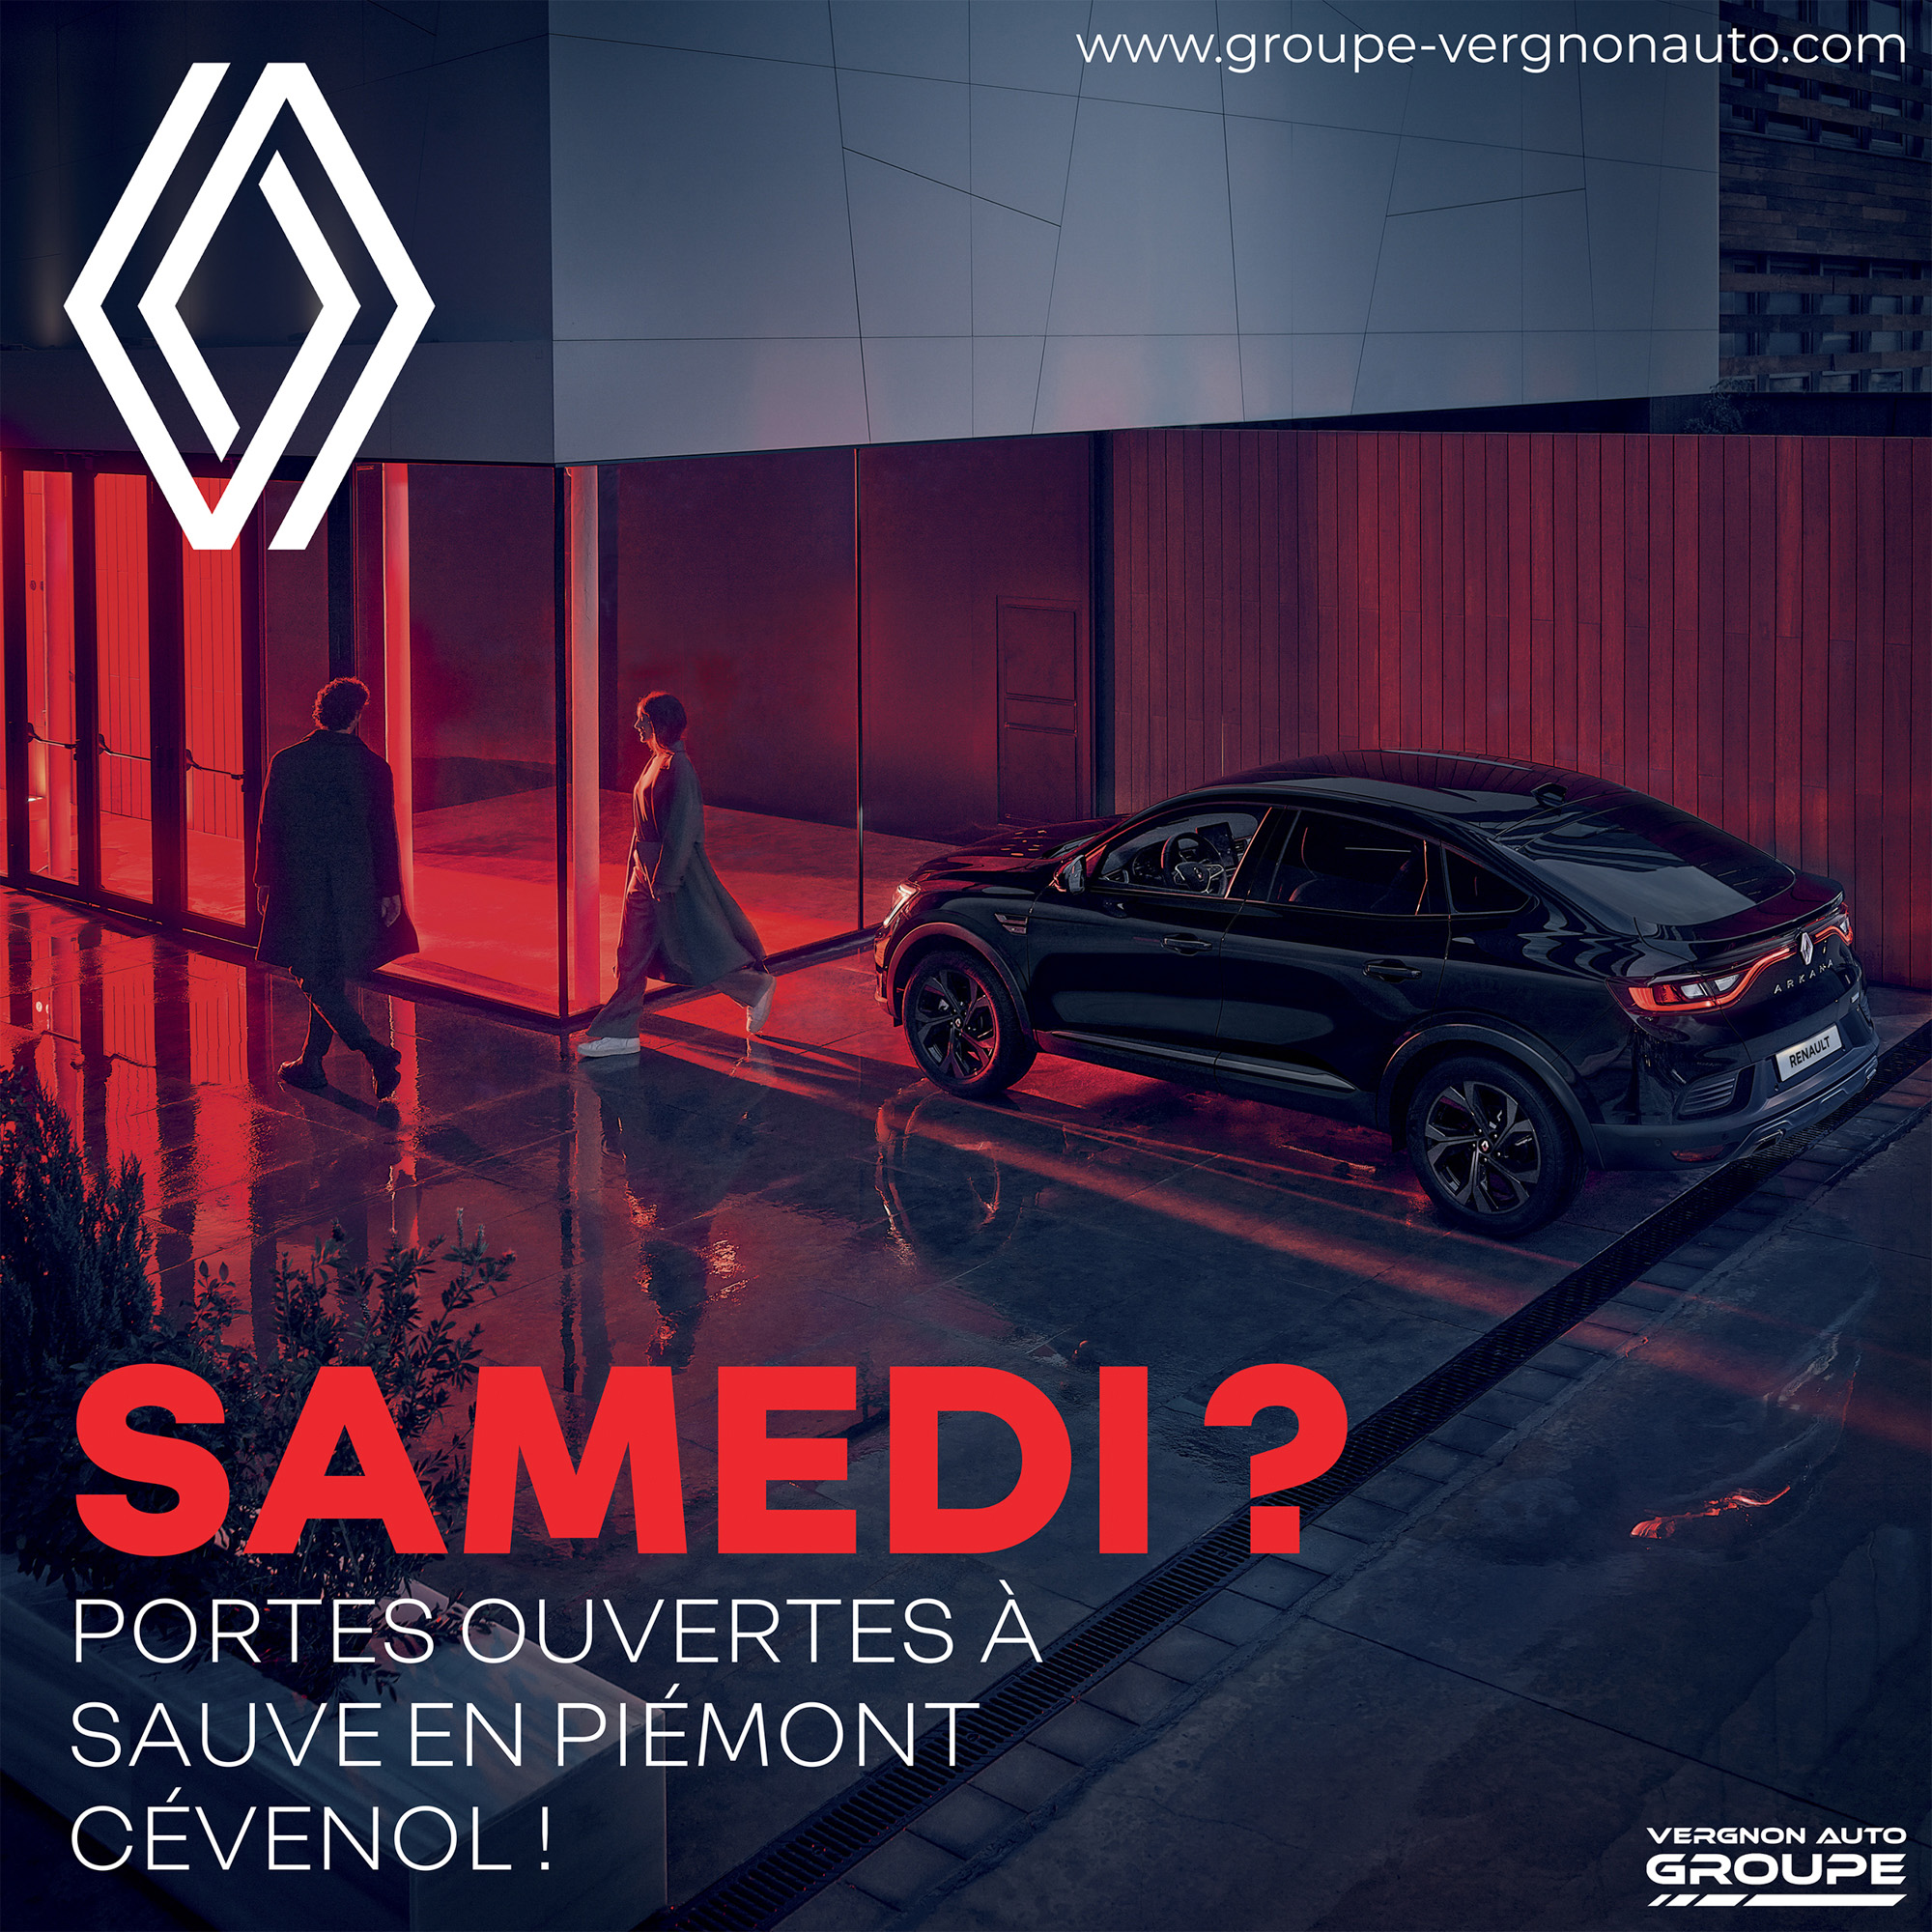 Samedi 16 octobre 2021, c'est portes ouvertes Renault à Sauve, en Piémont cévenol